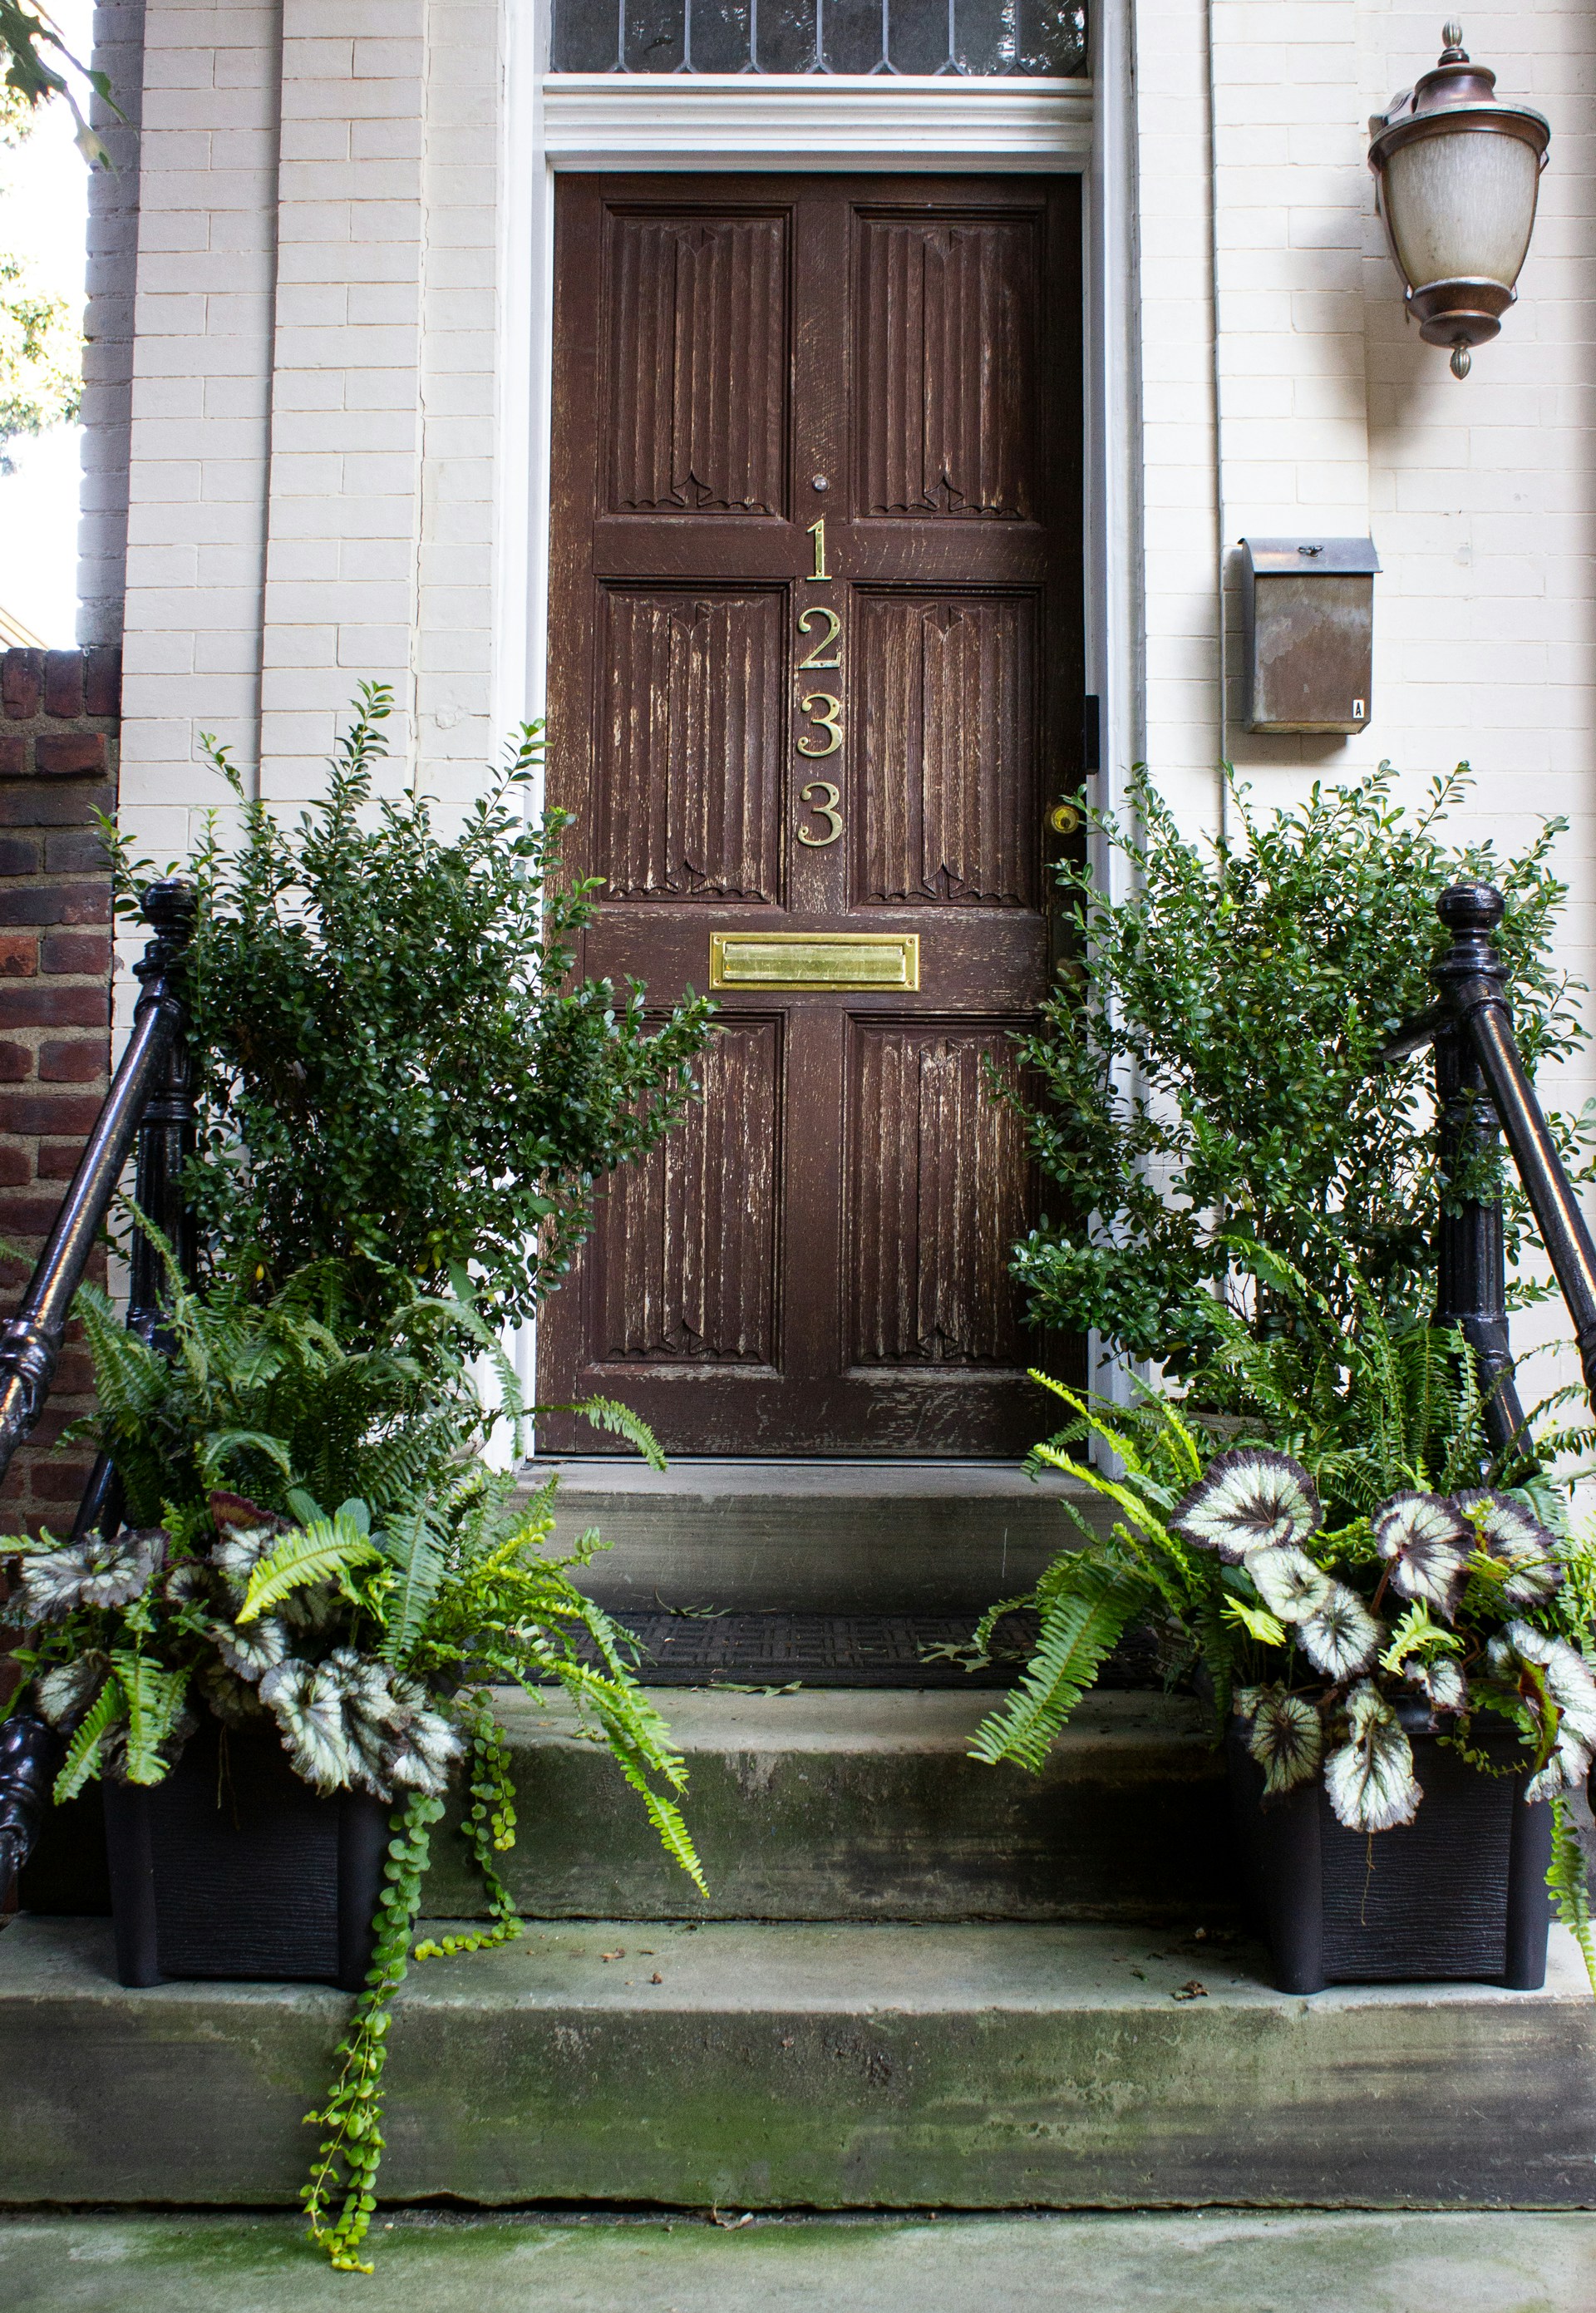 Eine braune Holztür mit grünen Pflanzen | Quelle: Unsplash